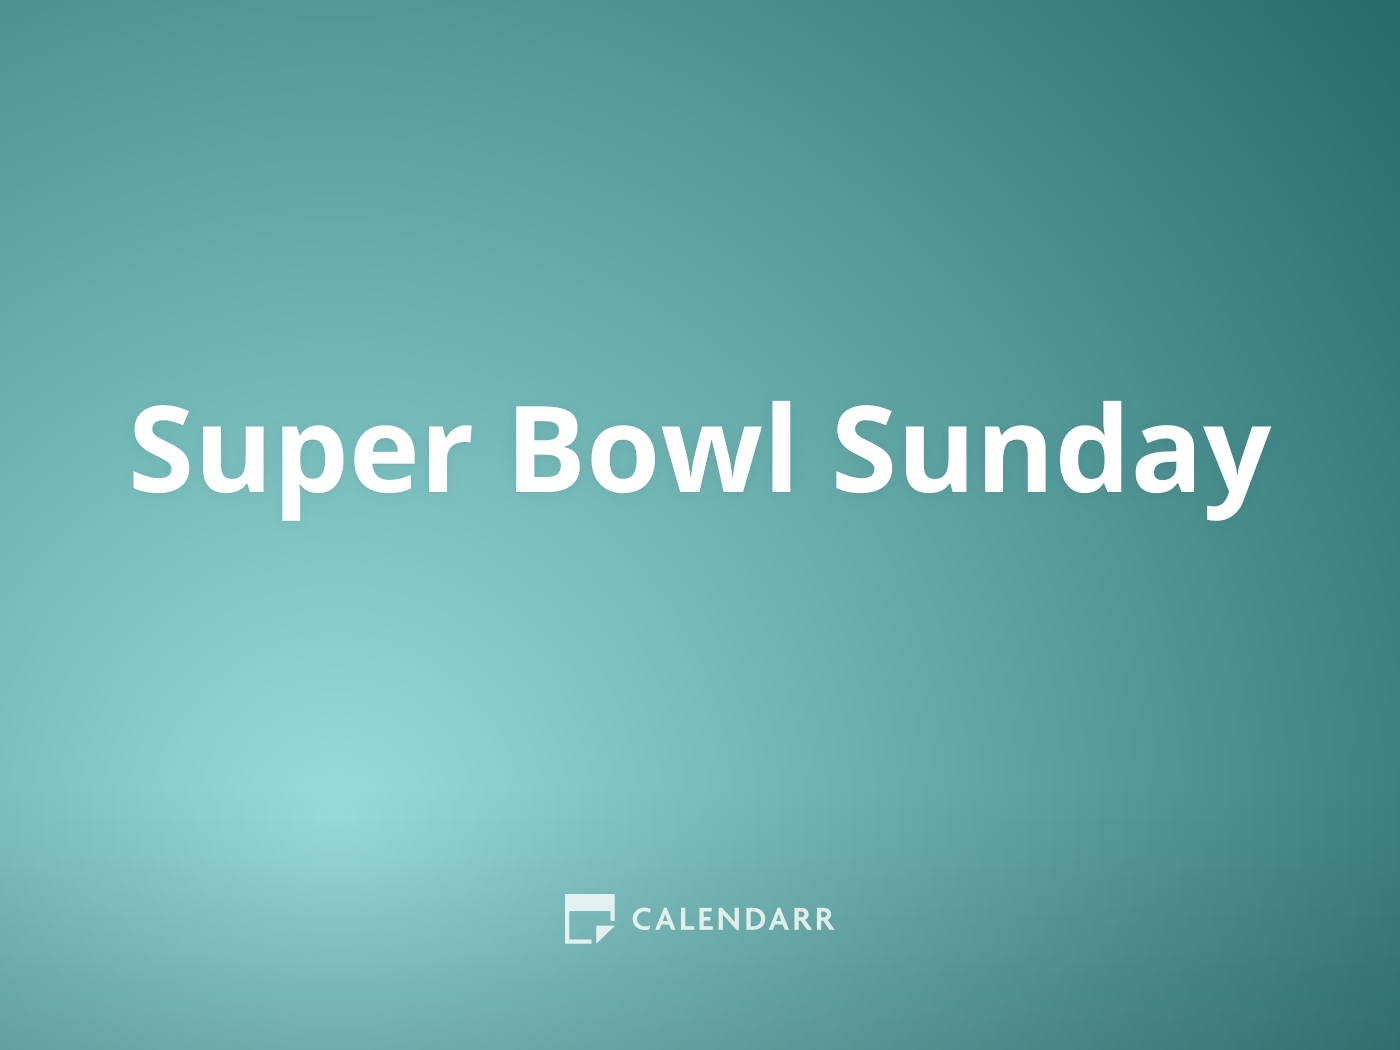 Super Bowl Sunday | February 13 - Calendarr